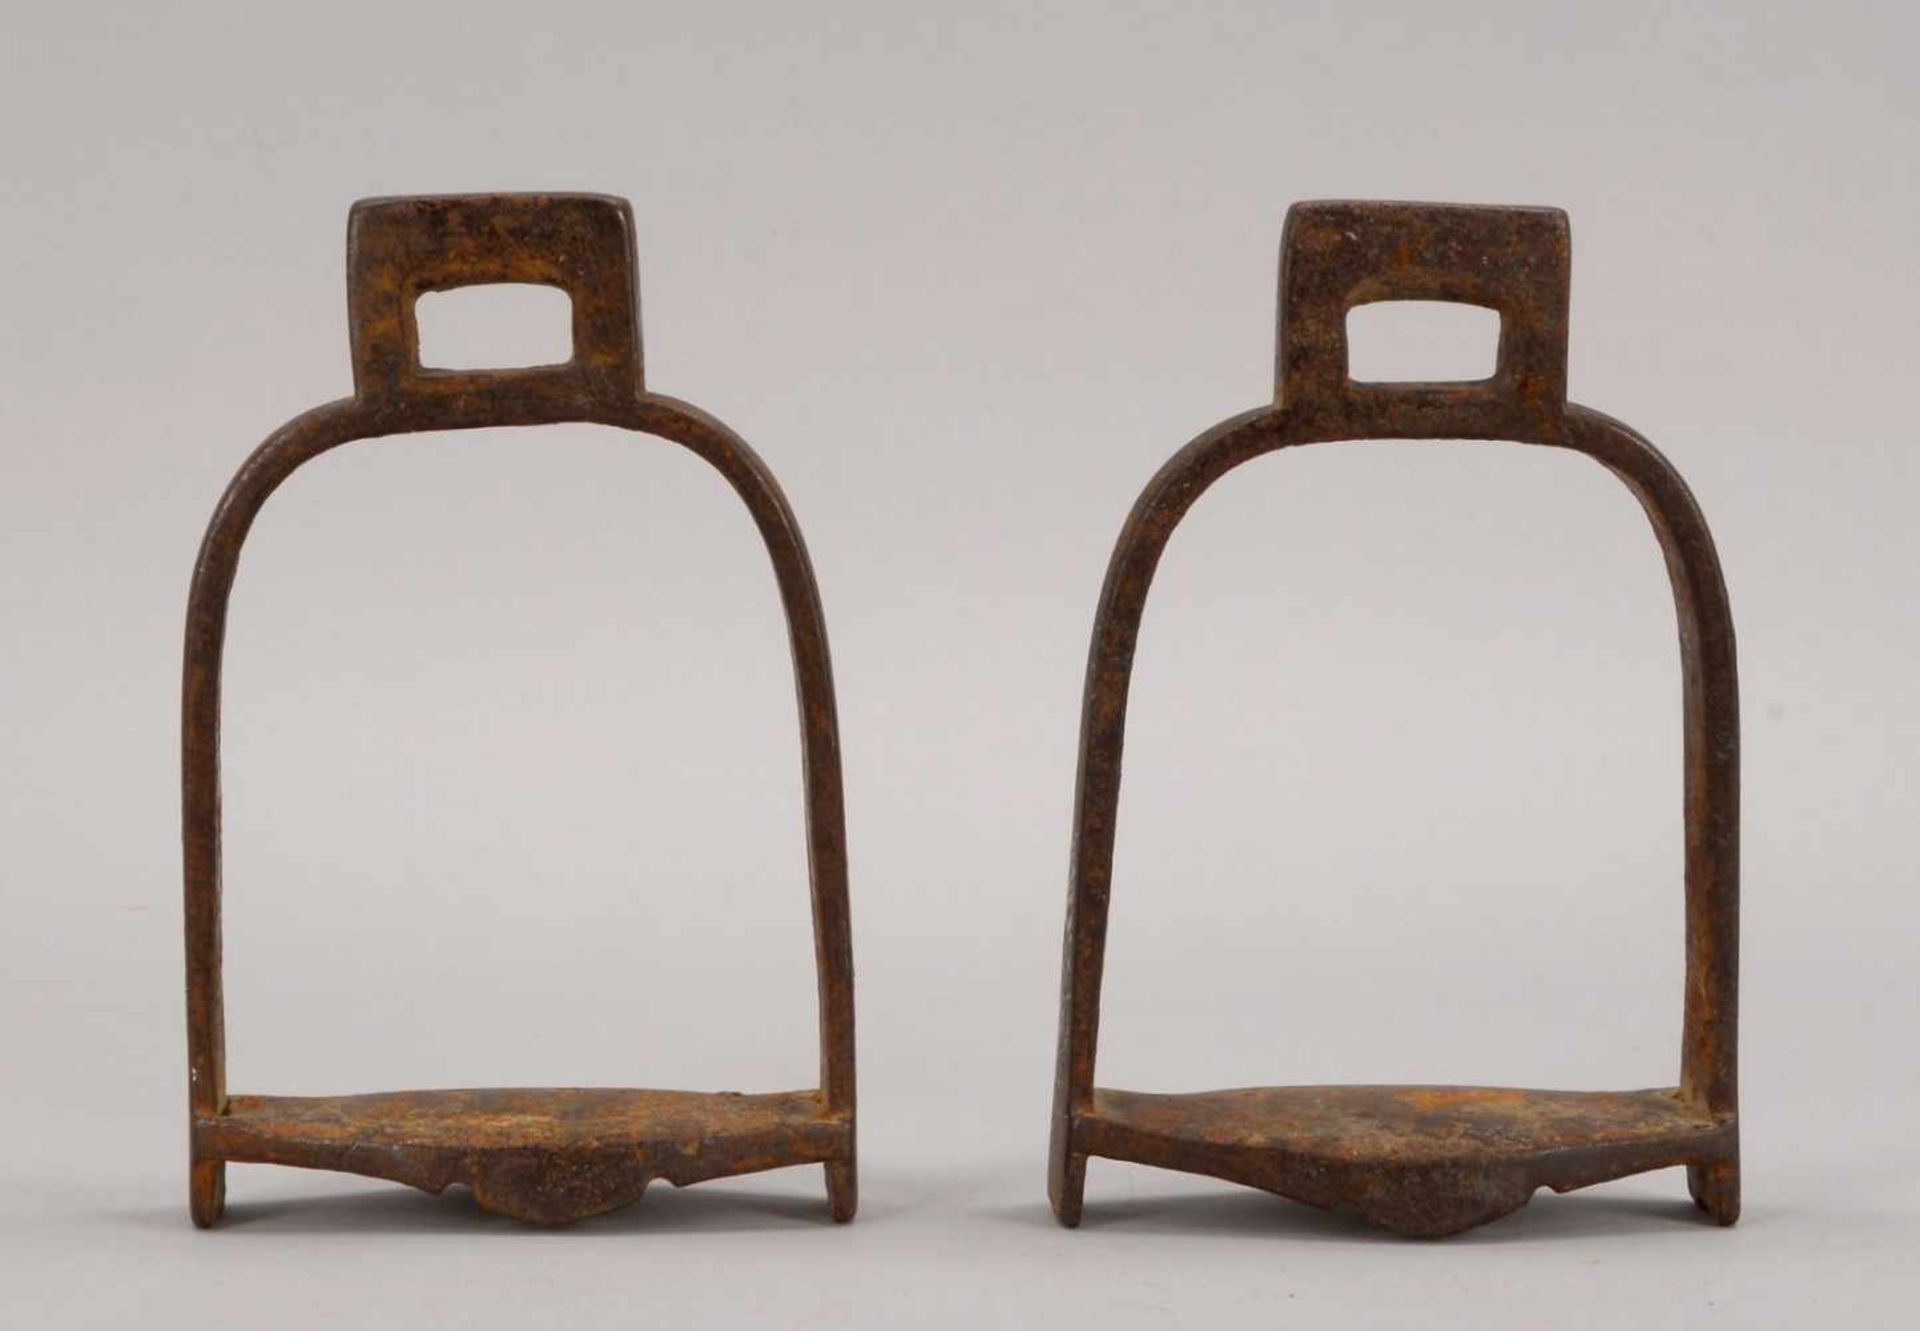 Paar Steigbügel (China), Eisen, seitlich mit ornamentalem Restdekor/versilbert; Höhe 20,5 cm - Bild 2 aus 2